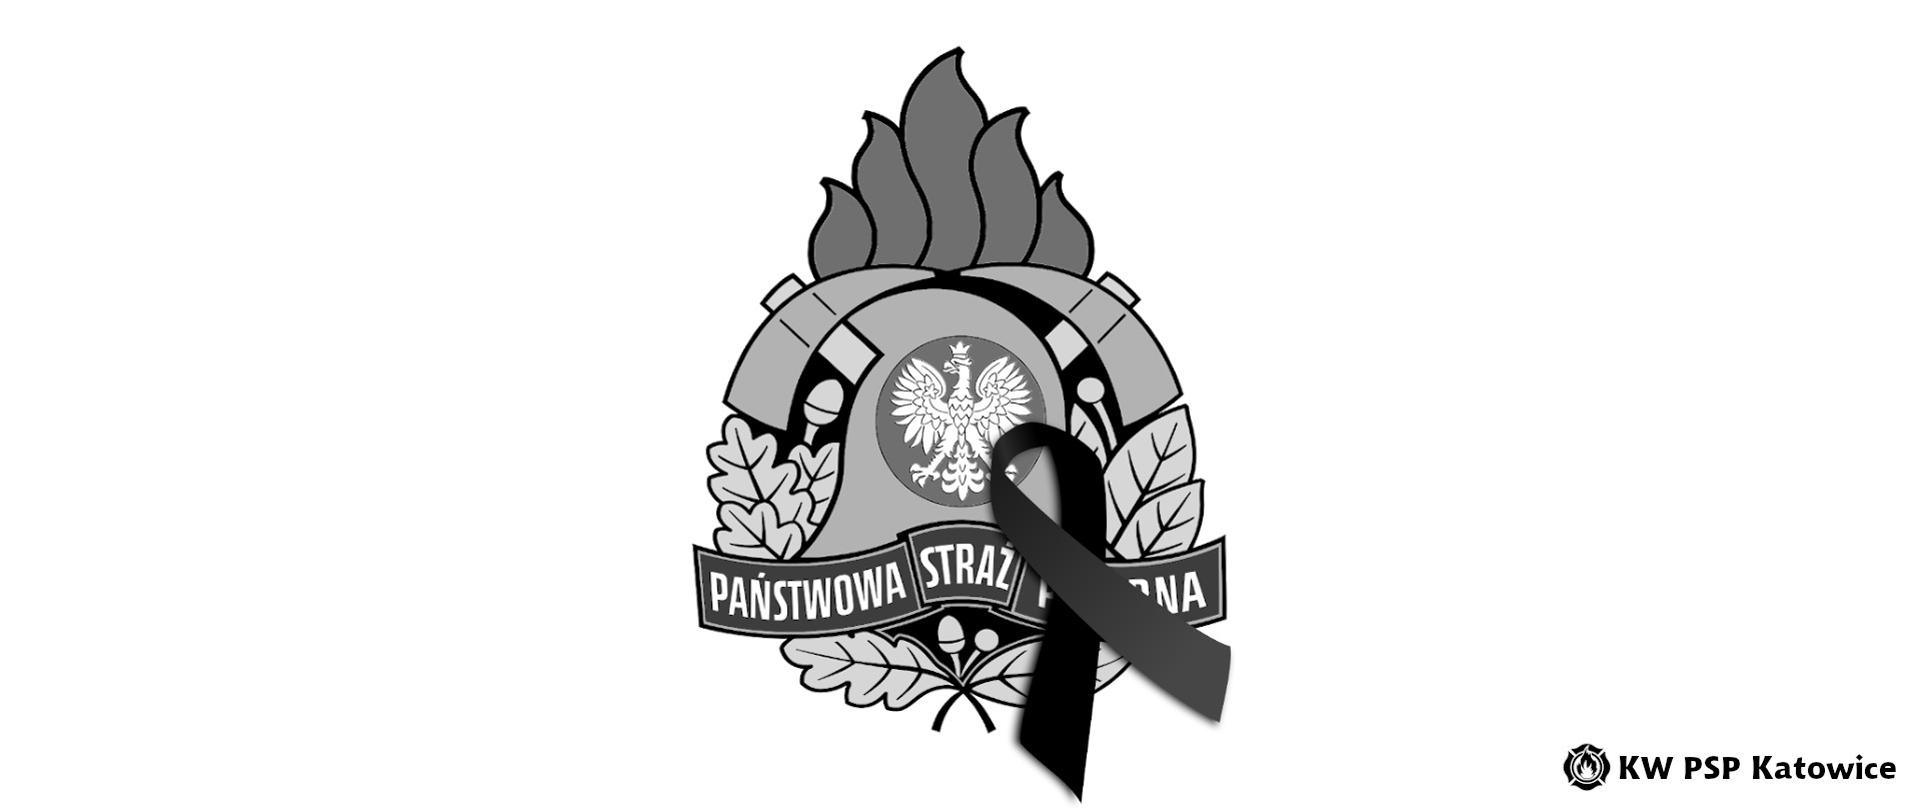 Ilustracja przedstawia na białym czarno-biały logotyp Państwowej Straży Pożarnej z czarną wstęgą. Na dole, w prawym rogu napis KW PSP Katowice